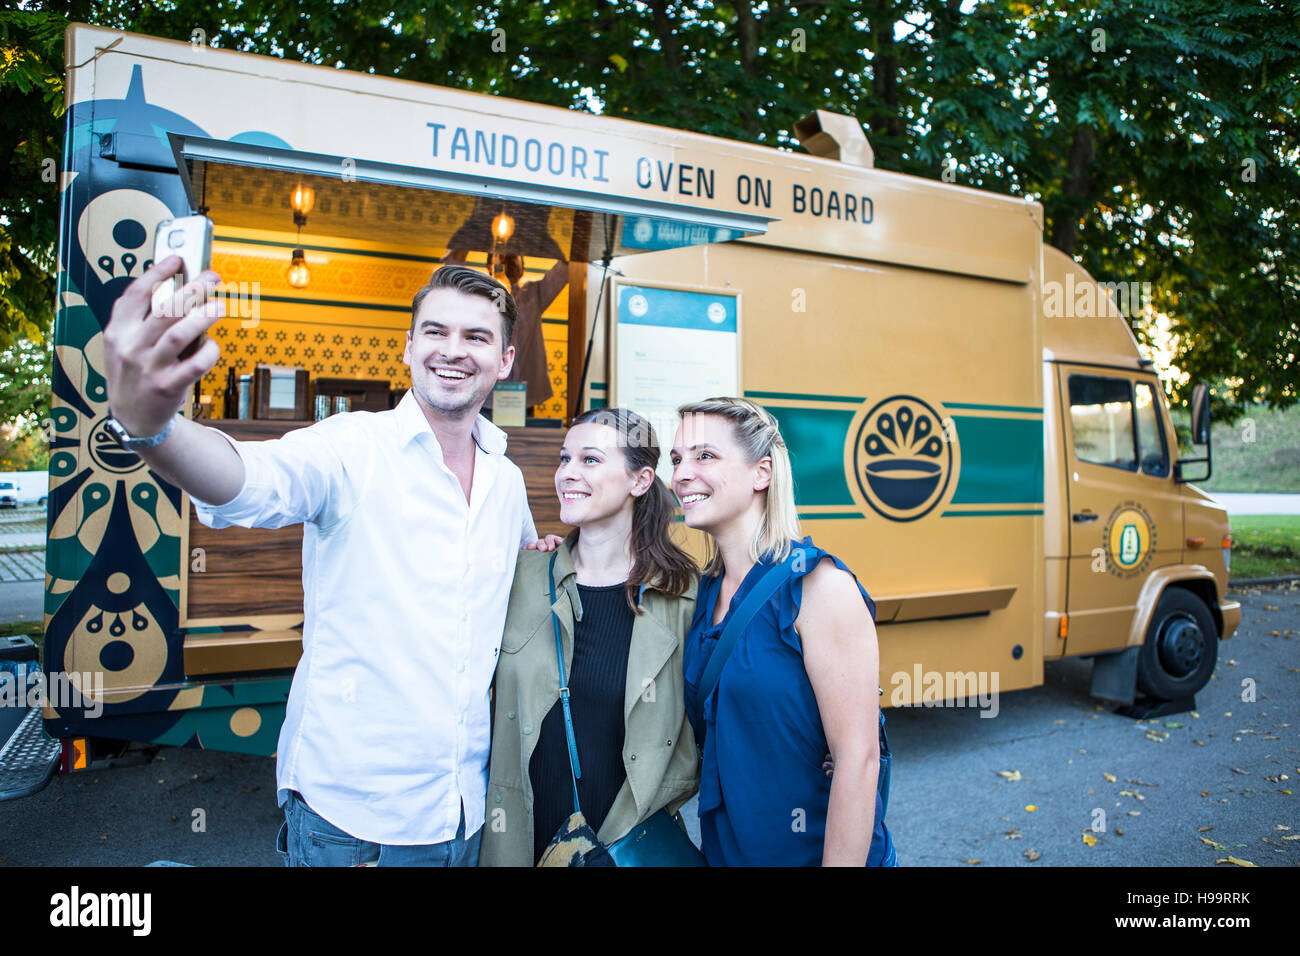 Los clientes teniendo un selfie junto al camión de alimentos Foto de stock